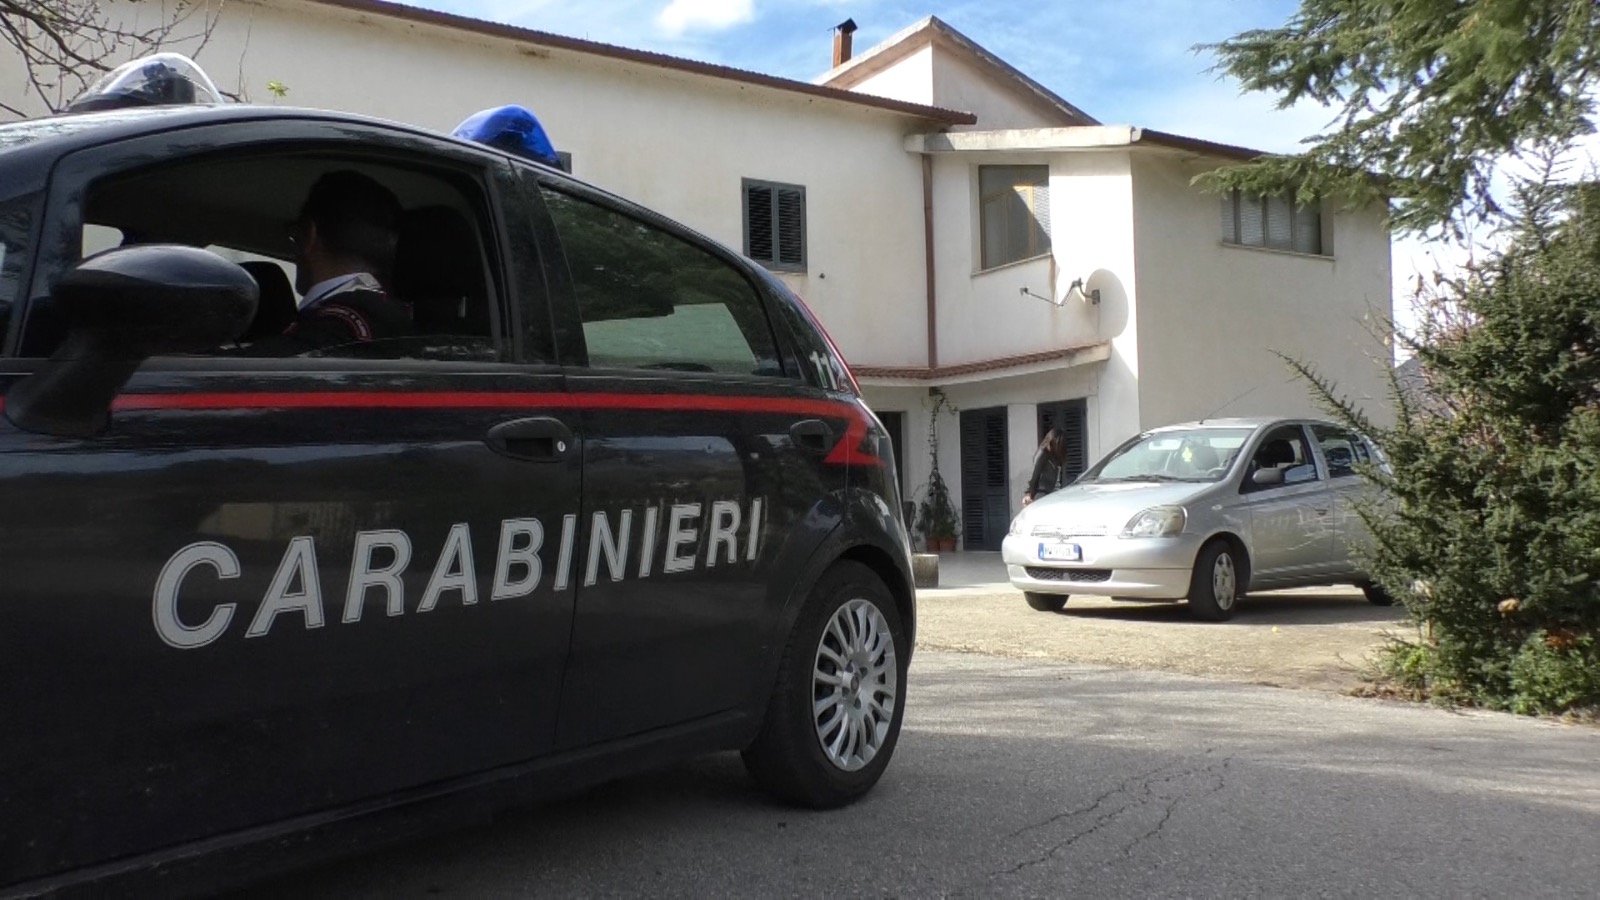 Castelvenere| Criminalità:domani vertice per l’ordine e la sicurezza